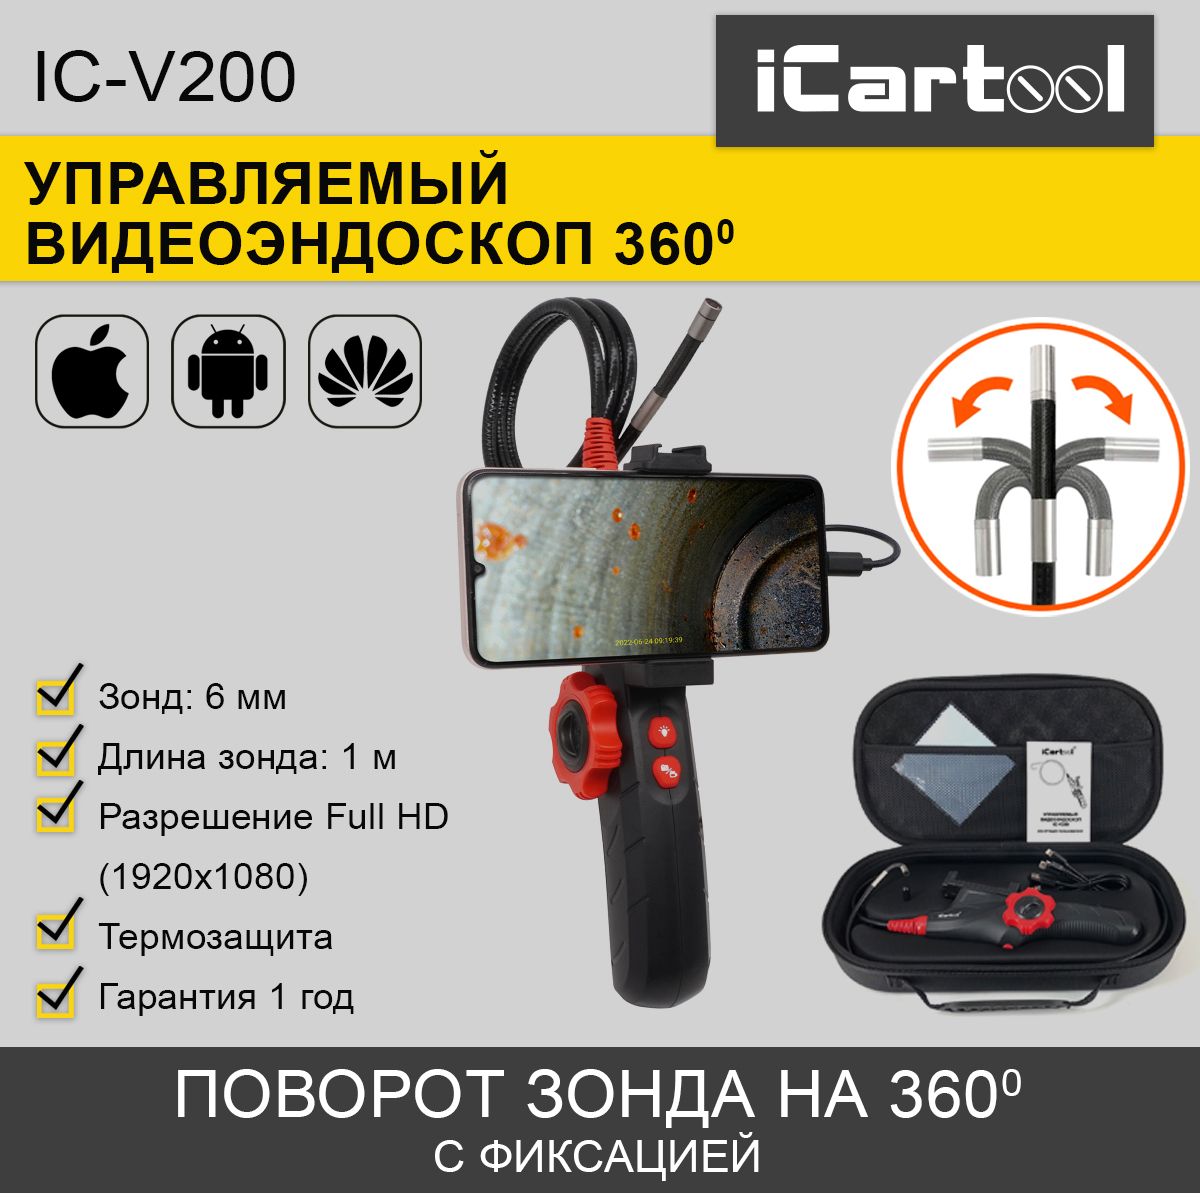 Видеоэндоскоп управляемый iCartool IC-V200 USB, 2Мп, 1920x1080, 1м, 6мм, 360 видеоэндоскоп управляемый icartool ic v200 usb 2мп 1920x1080 1м 6мм 360